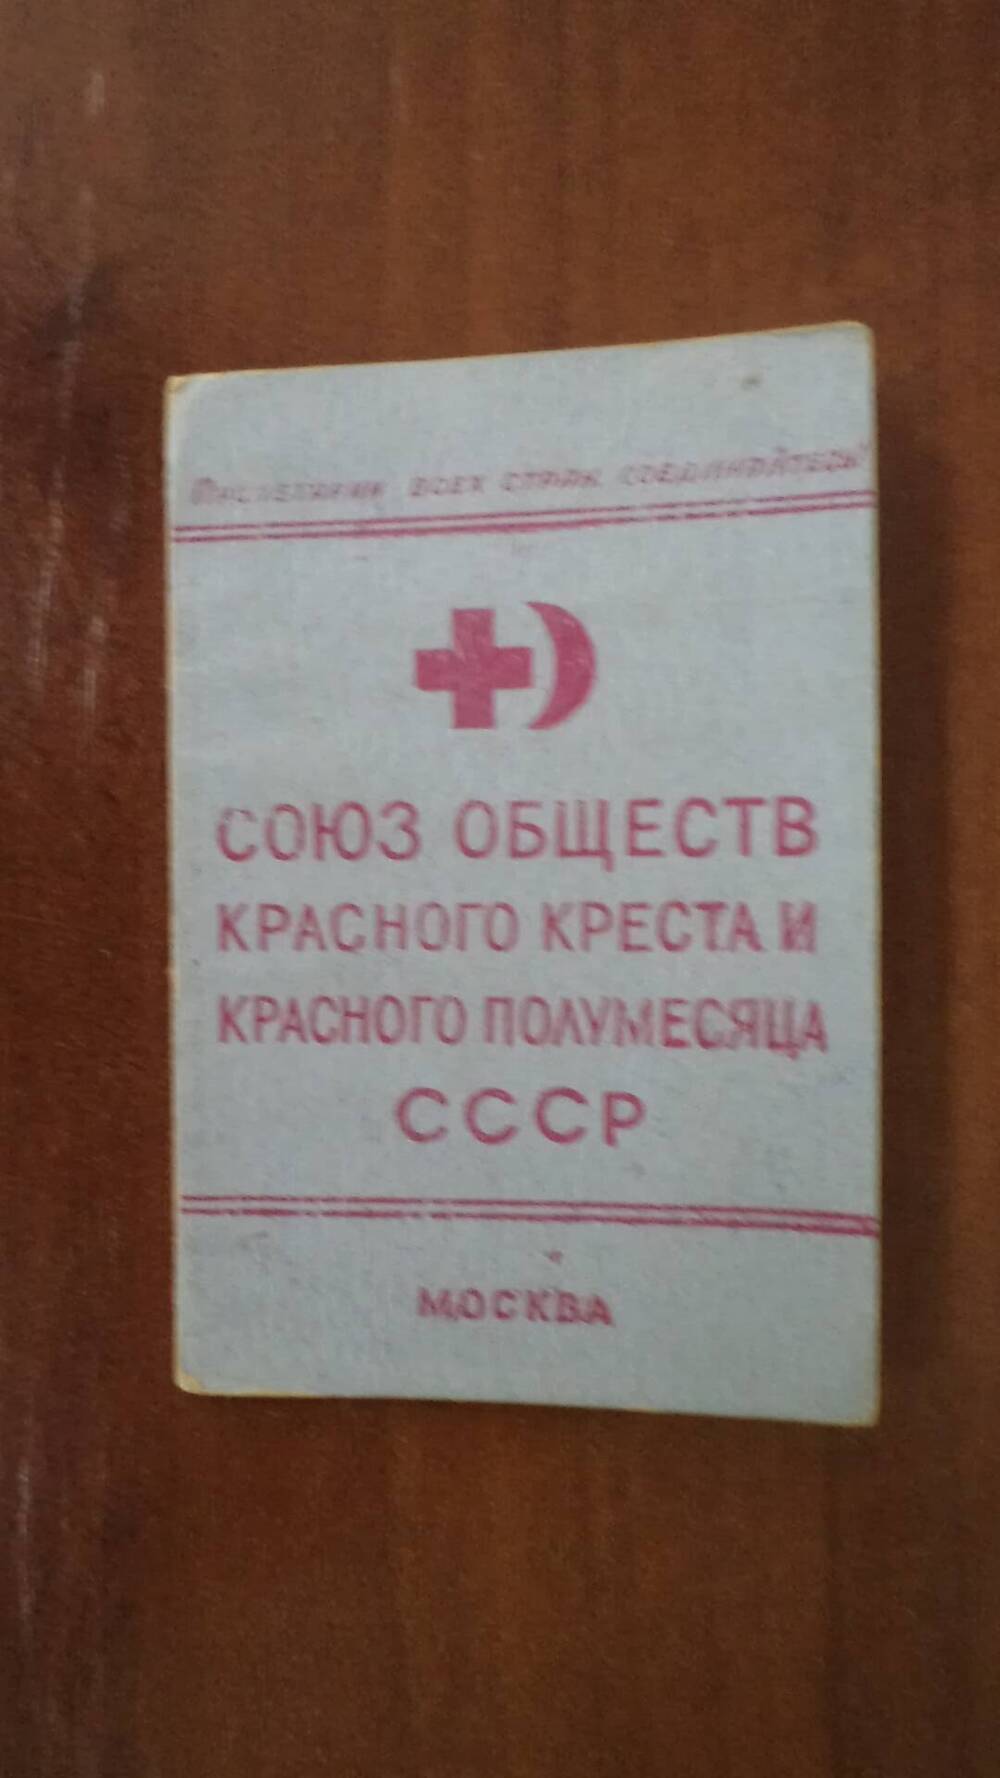 Членский билет Союз обществ красного креста и красного полумесяца